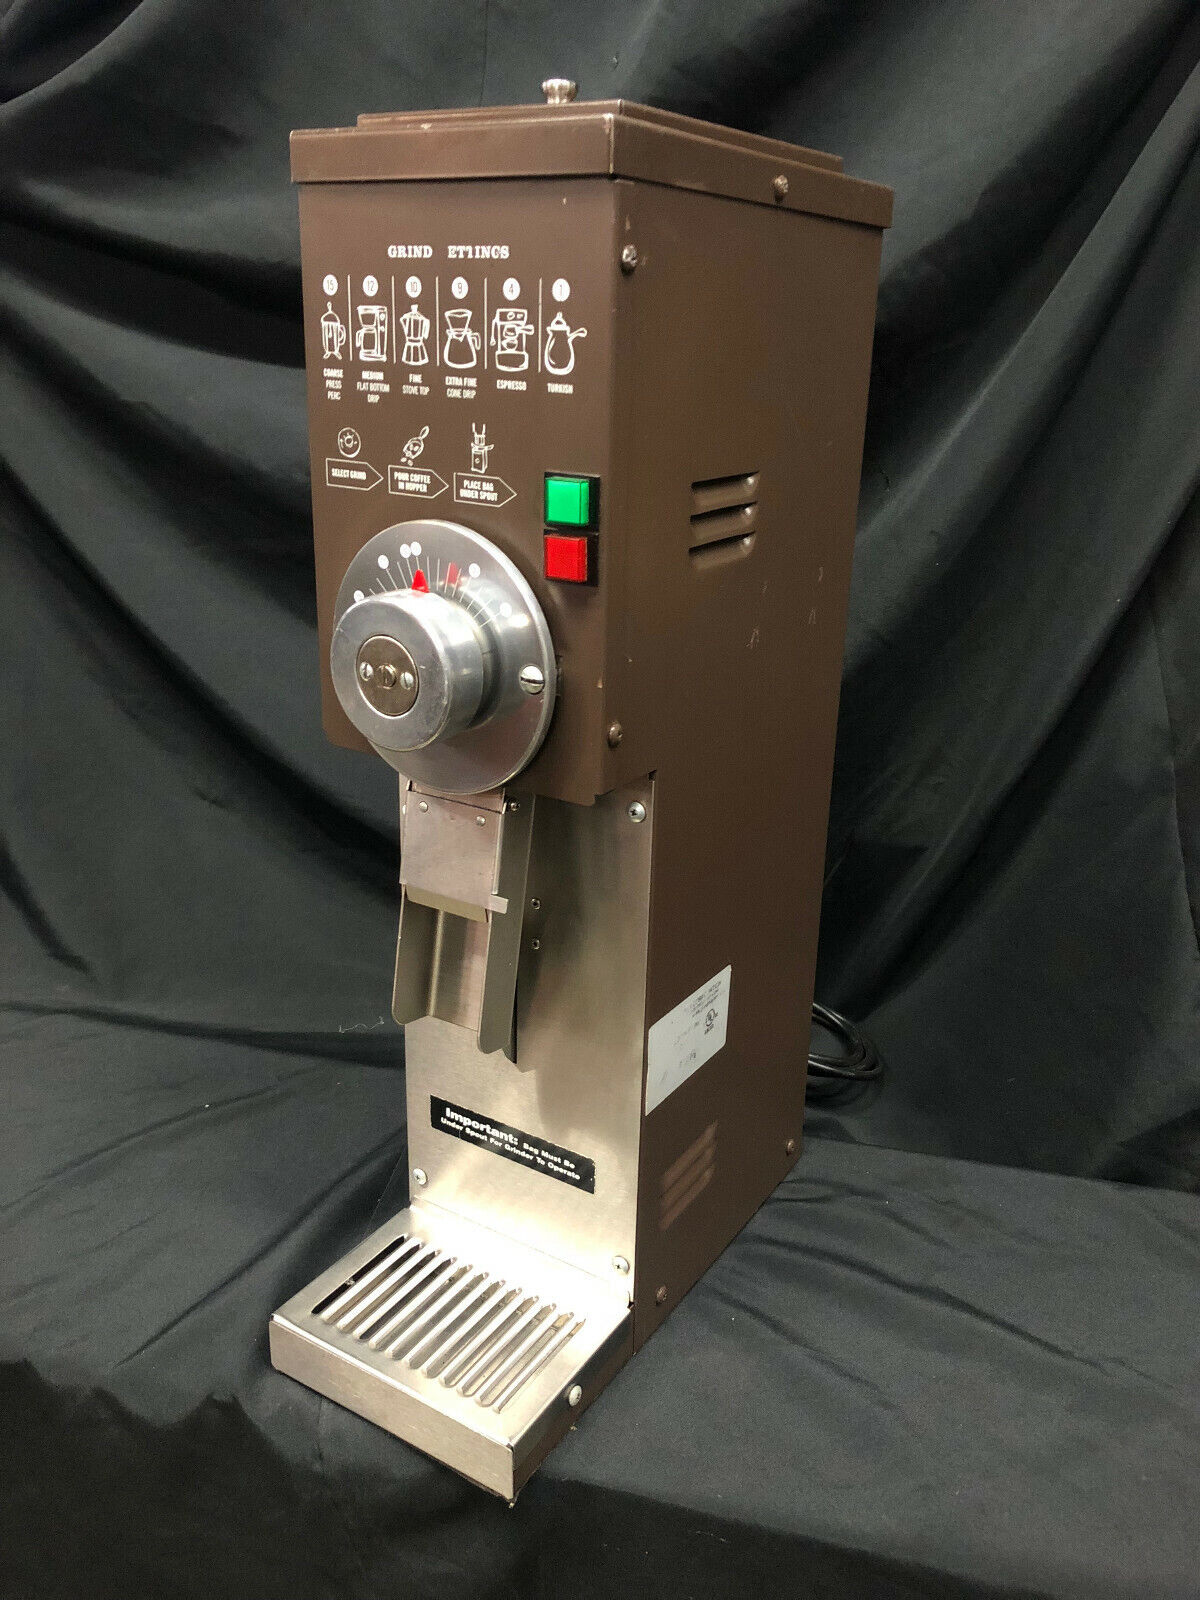 Grindmaster 890 Coffee Grinder